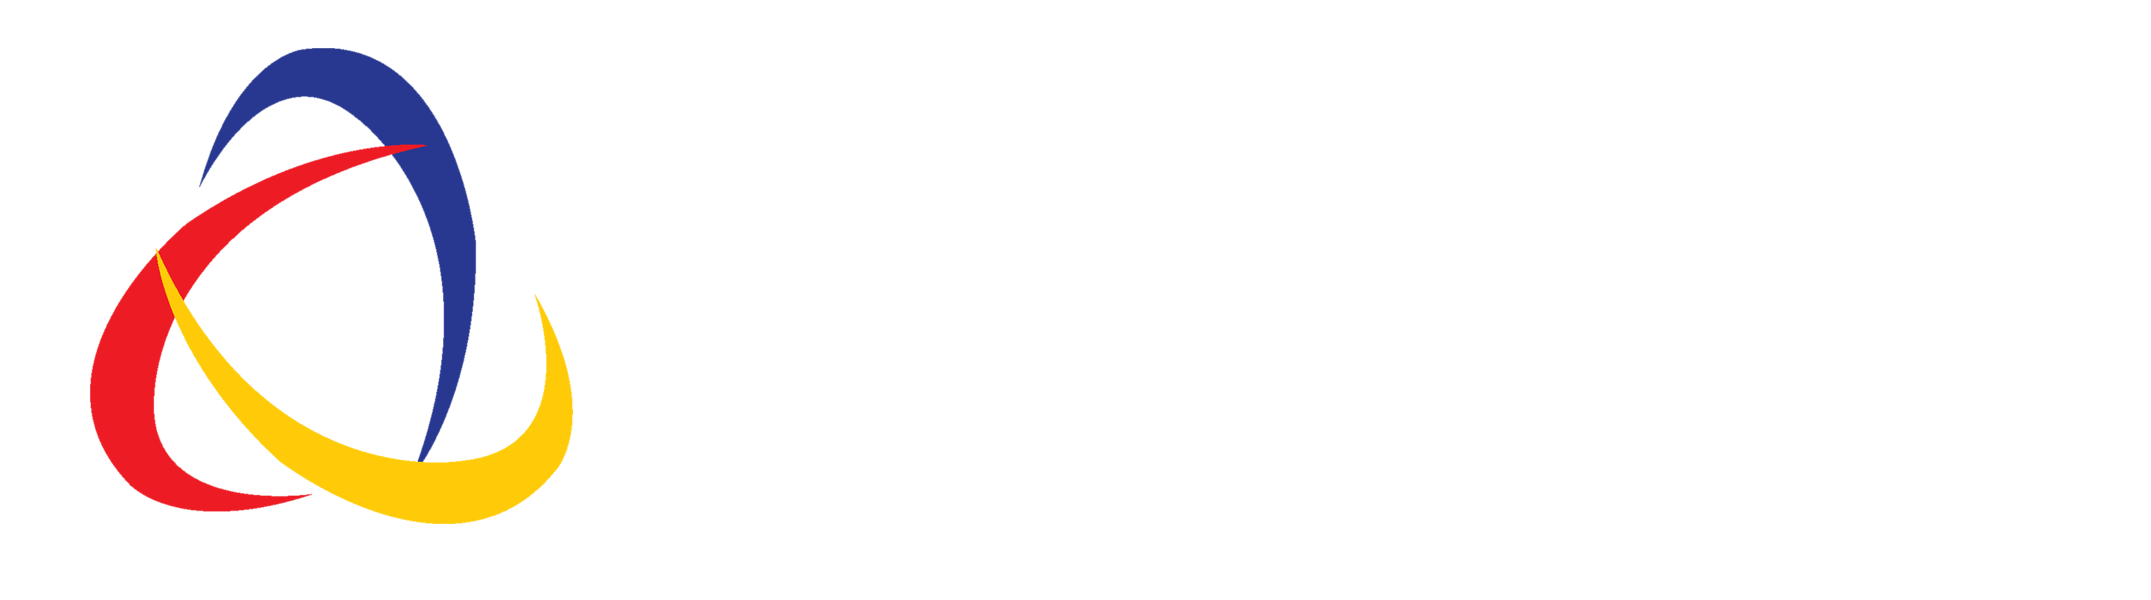 UMG Logo - How to Design a Successful Business Logo – UMG ICT